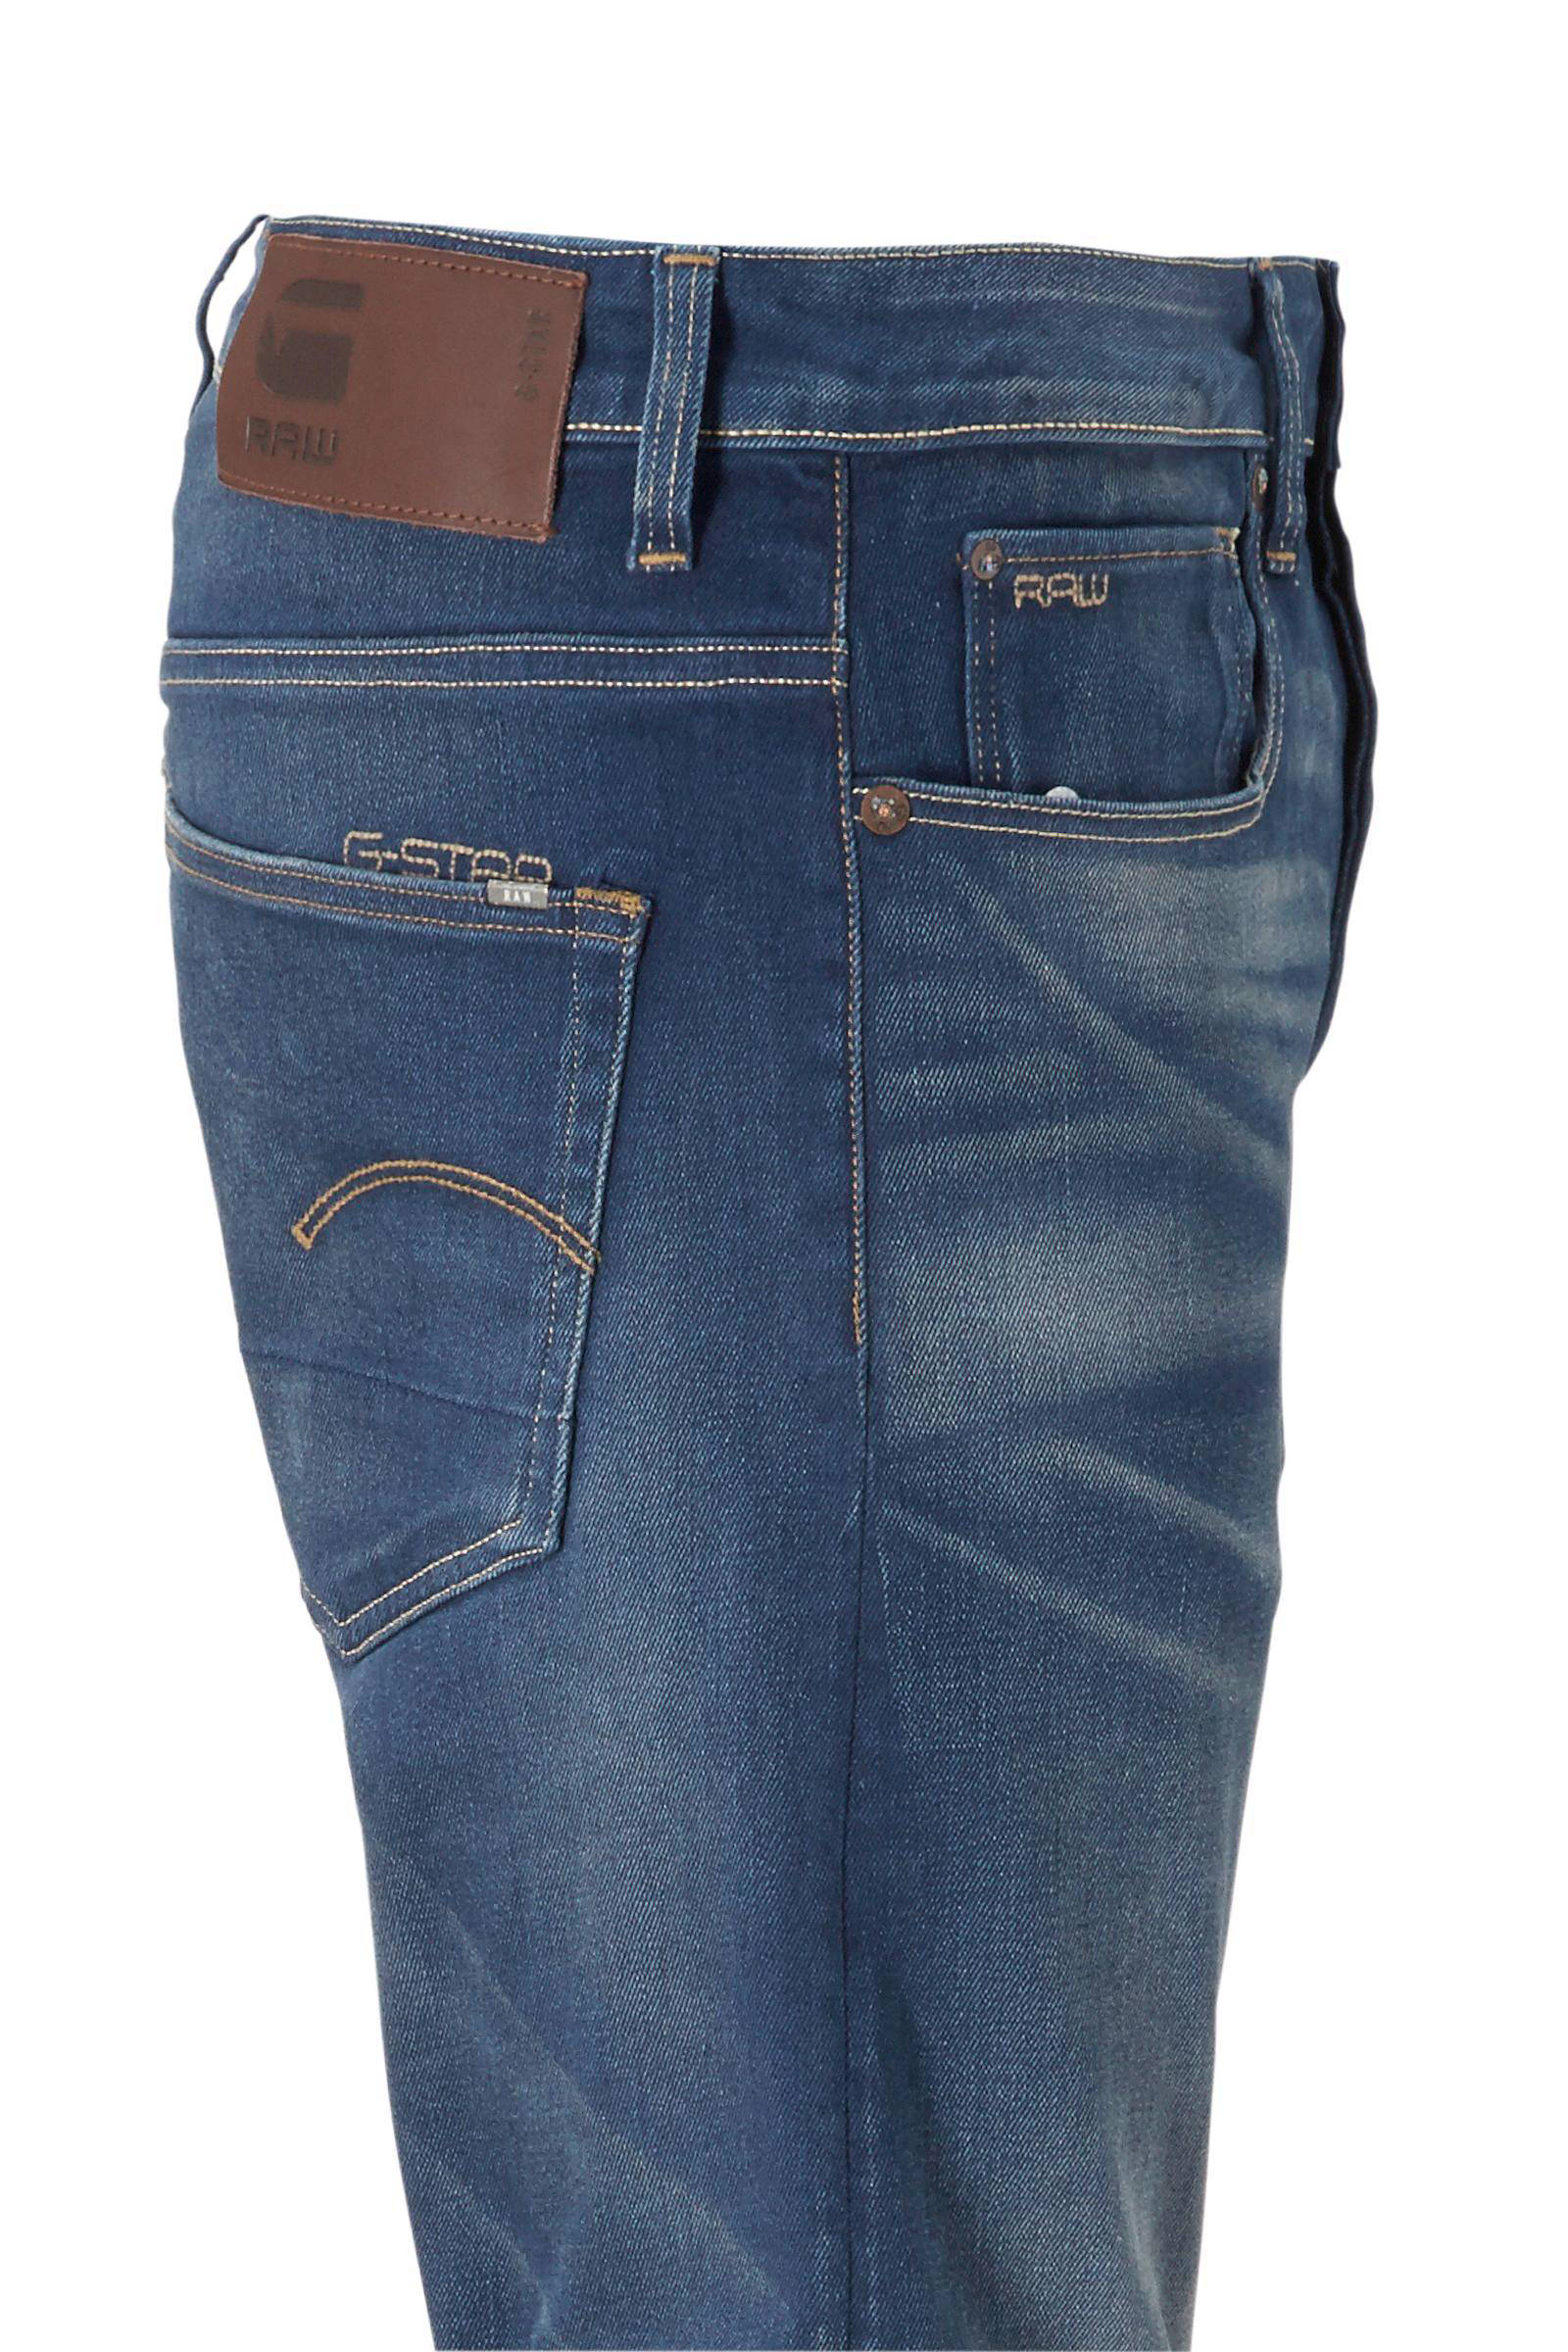 G-Star RAW slim fit jeans 3301 medium 